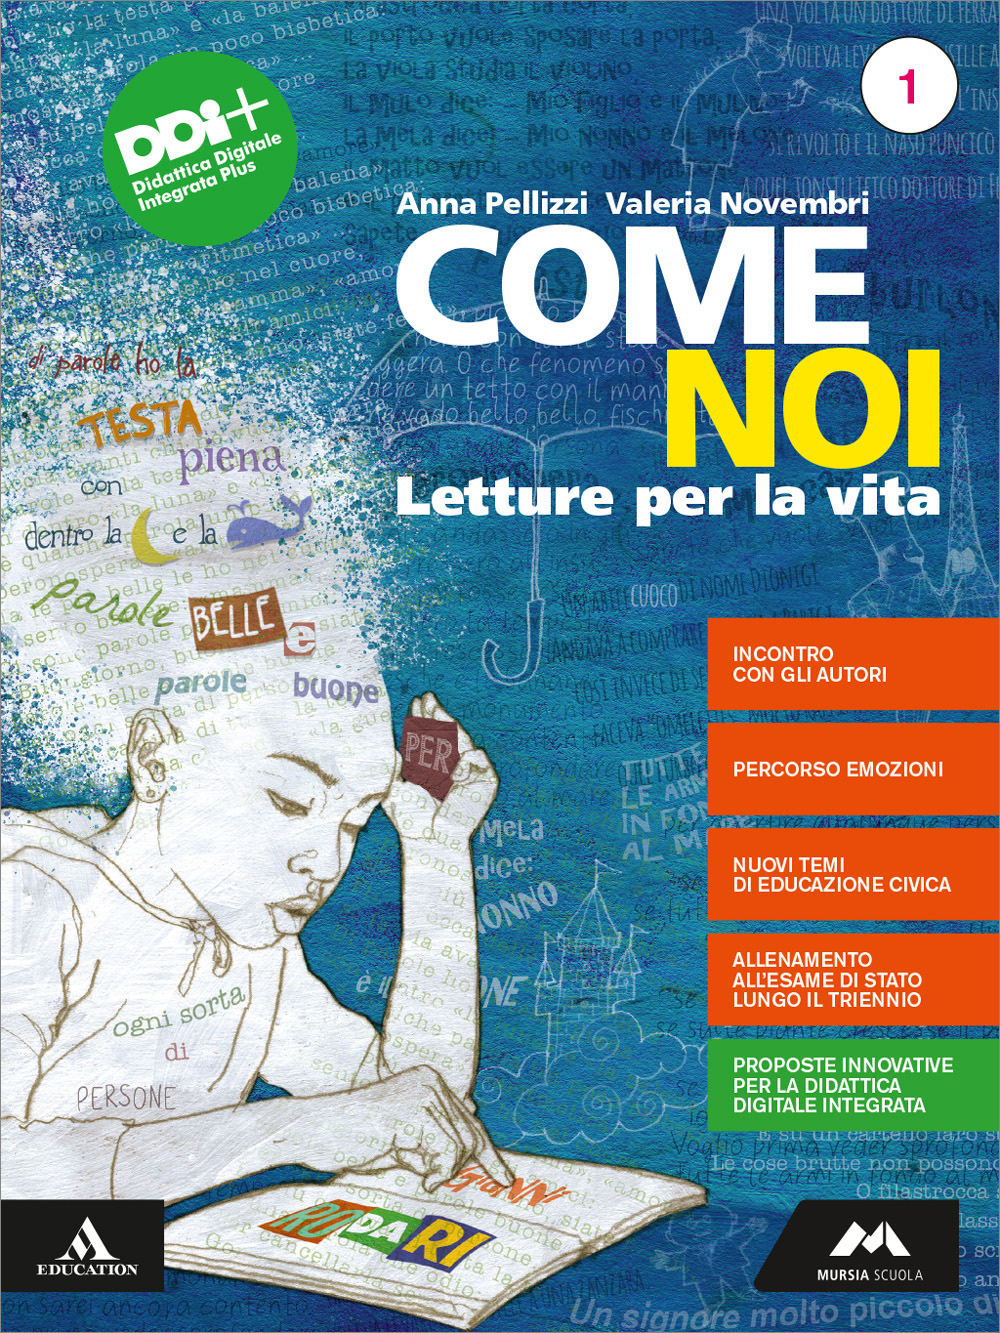 COME NOI - Mondadori Education